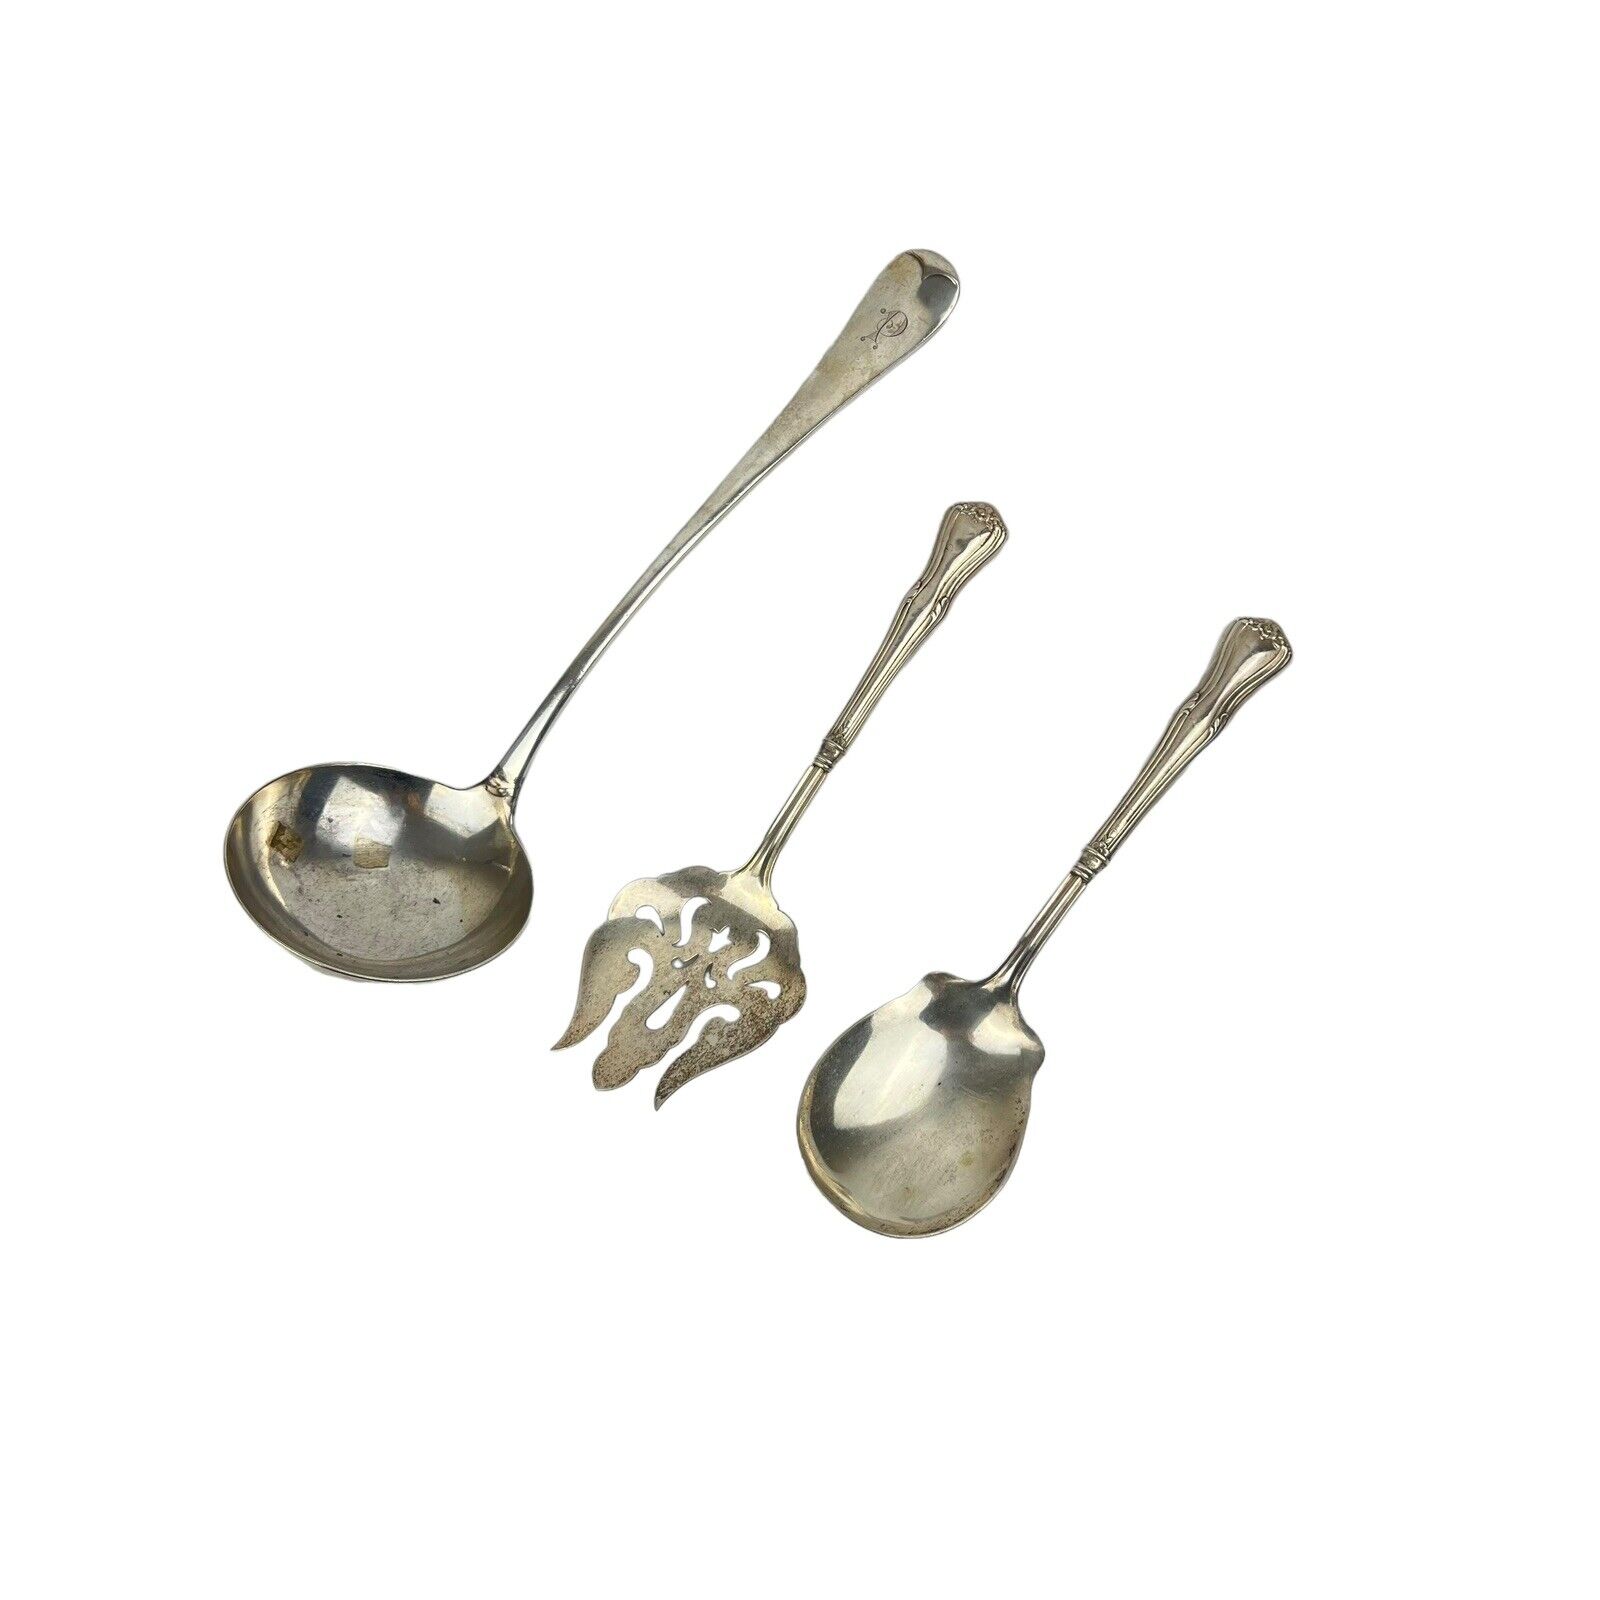 Silver Plated Utensils Ladle Fish Spoon Fork Tableware Vintage Sterling Handle